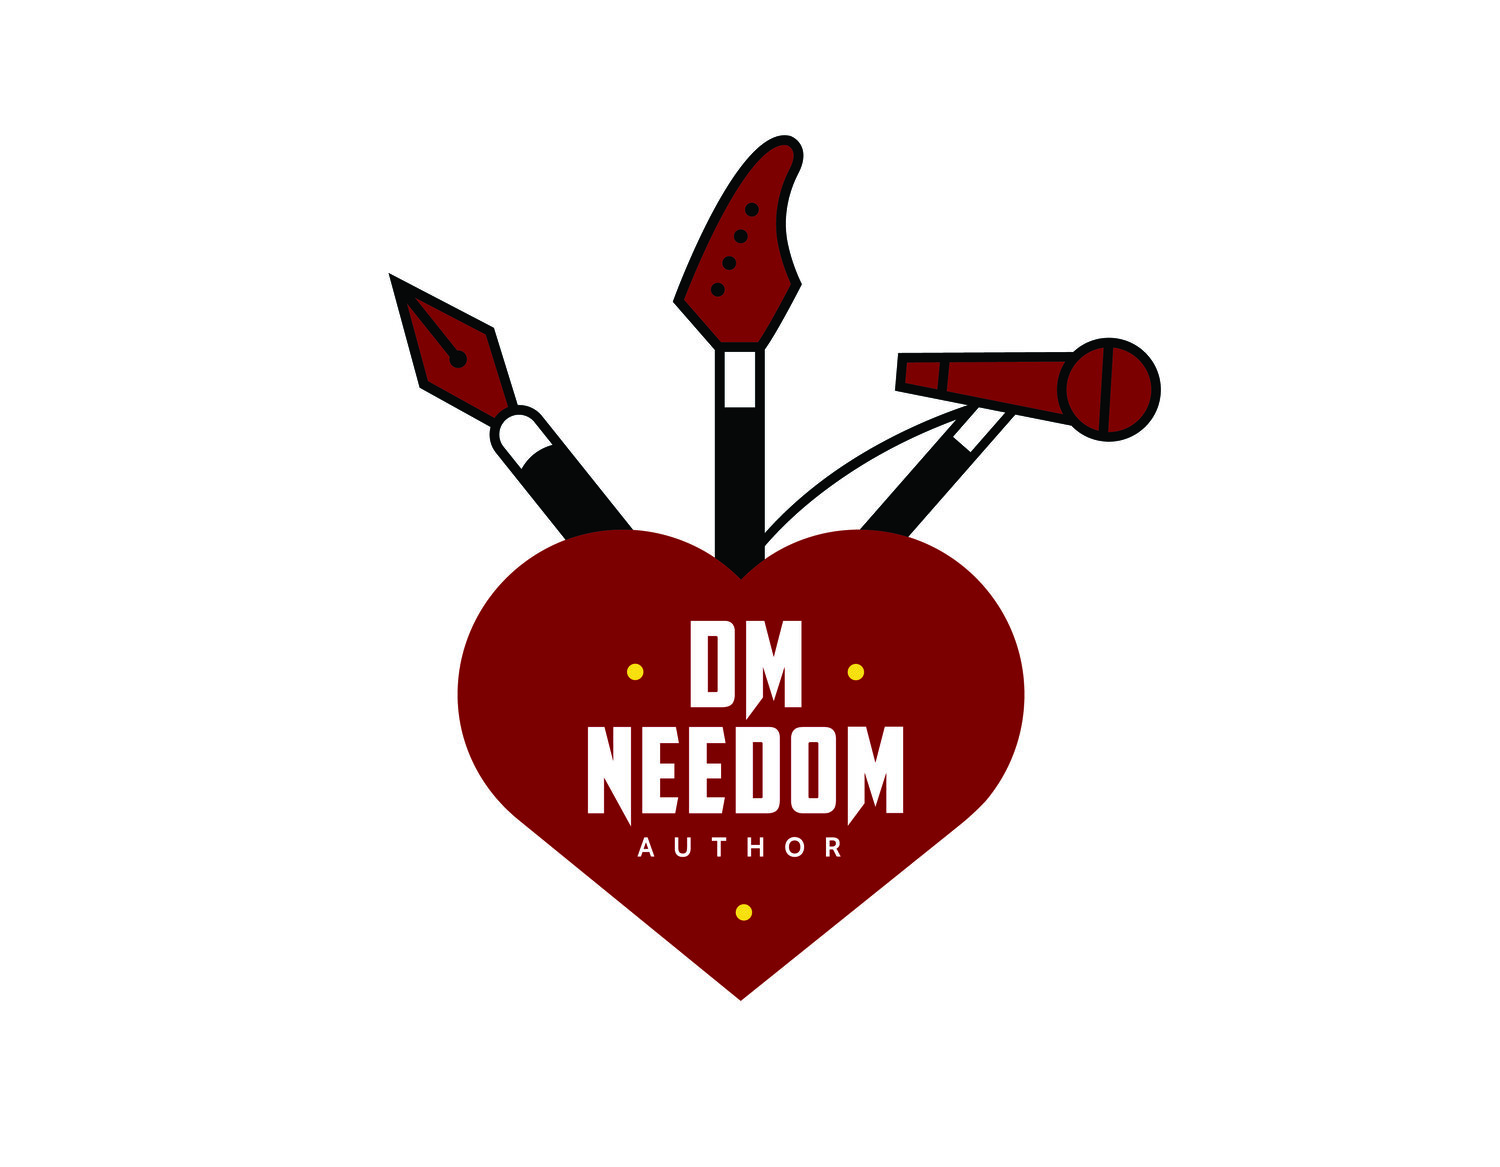 D. M. Needom